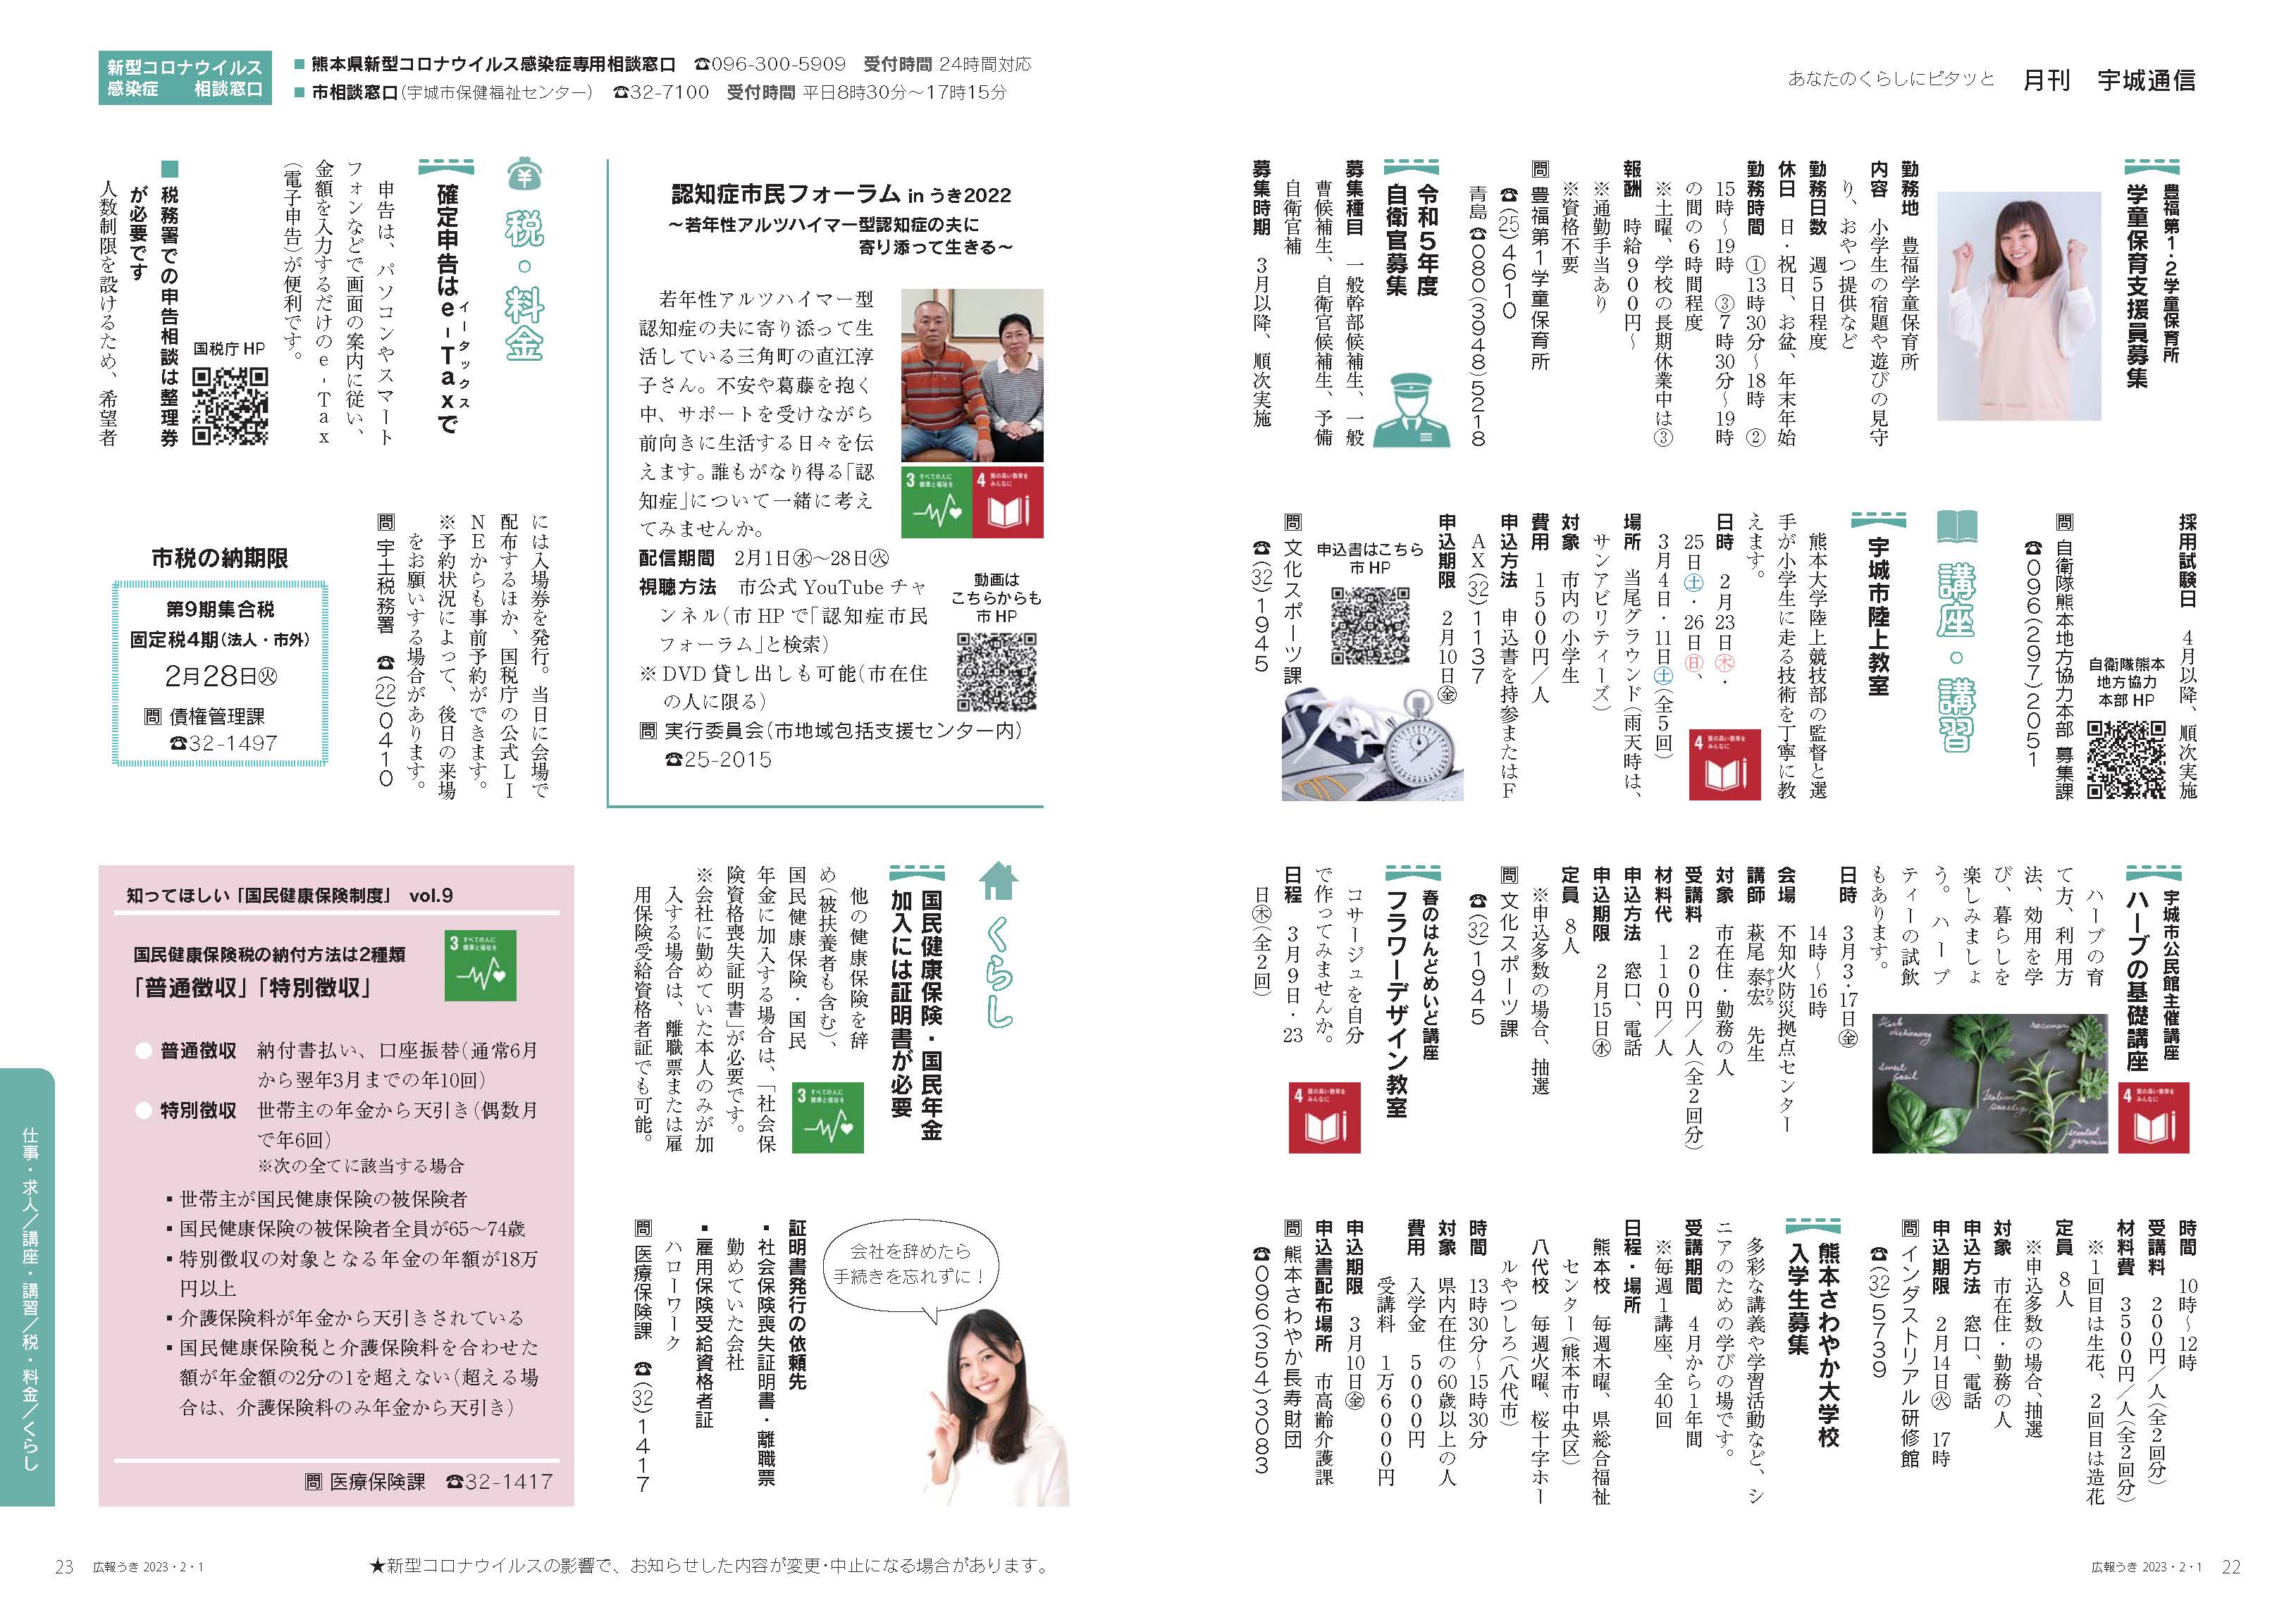 P22、P23  月刊 宇城通信の画像、詳細はPDFファイルをご参照ください